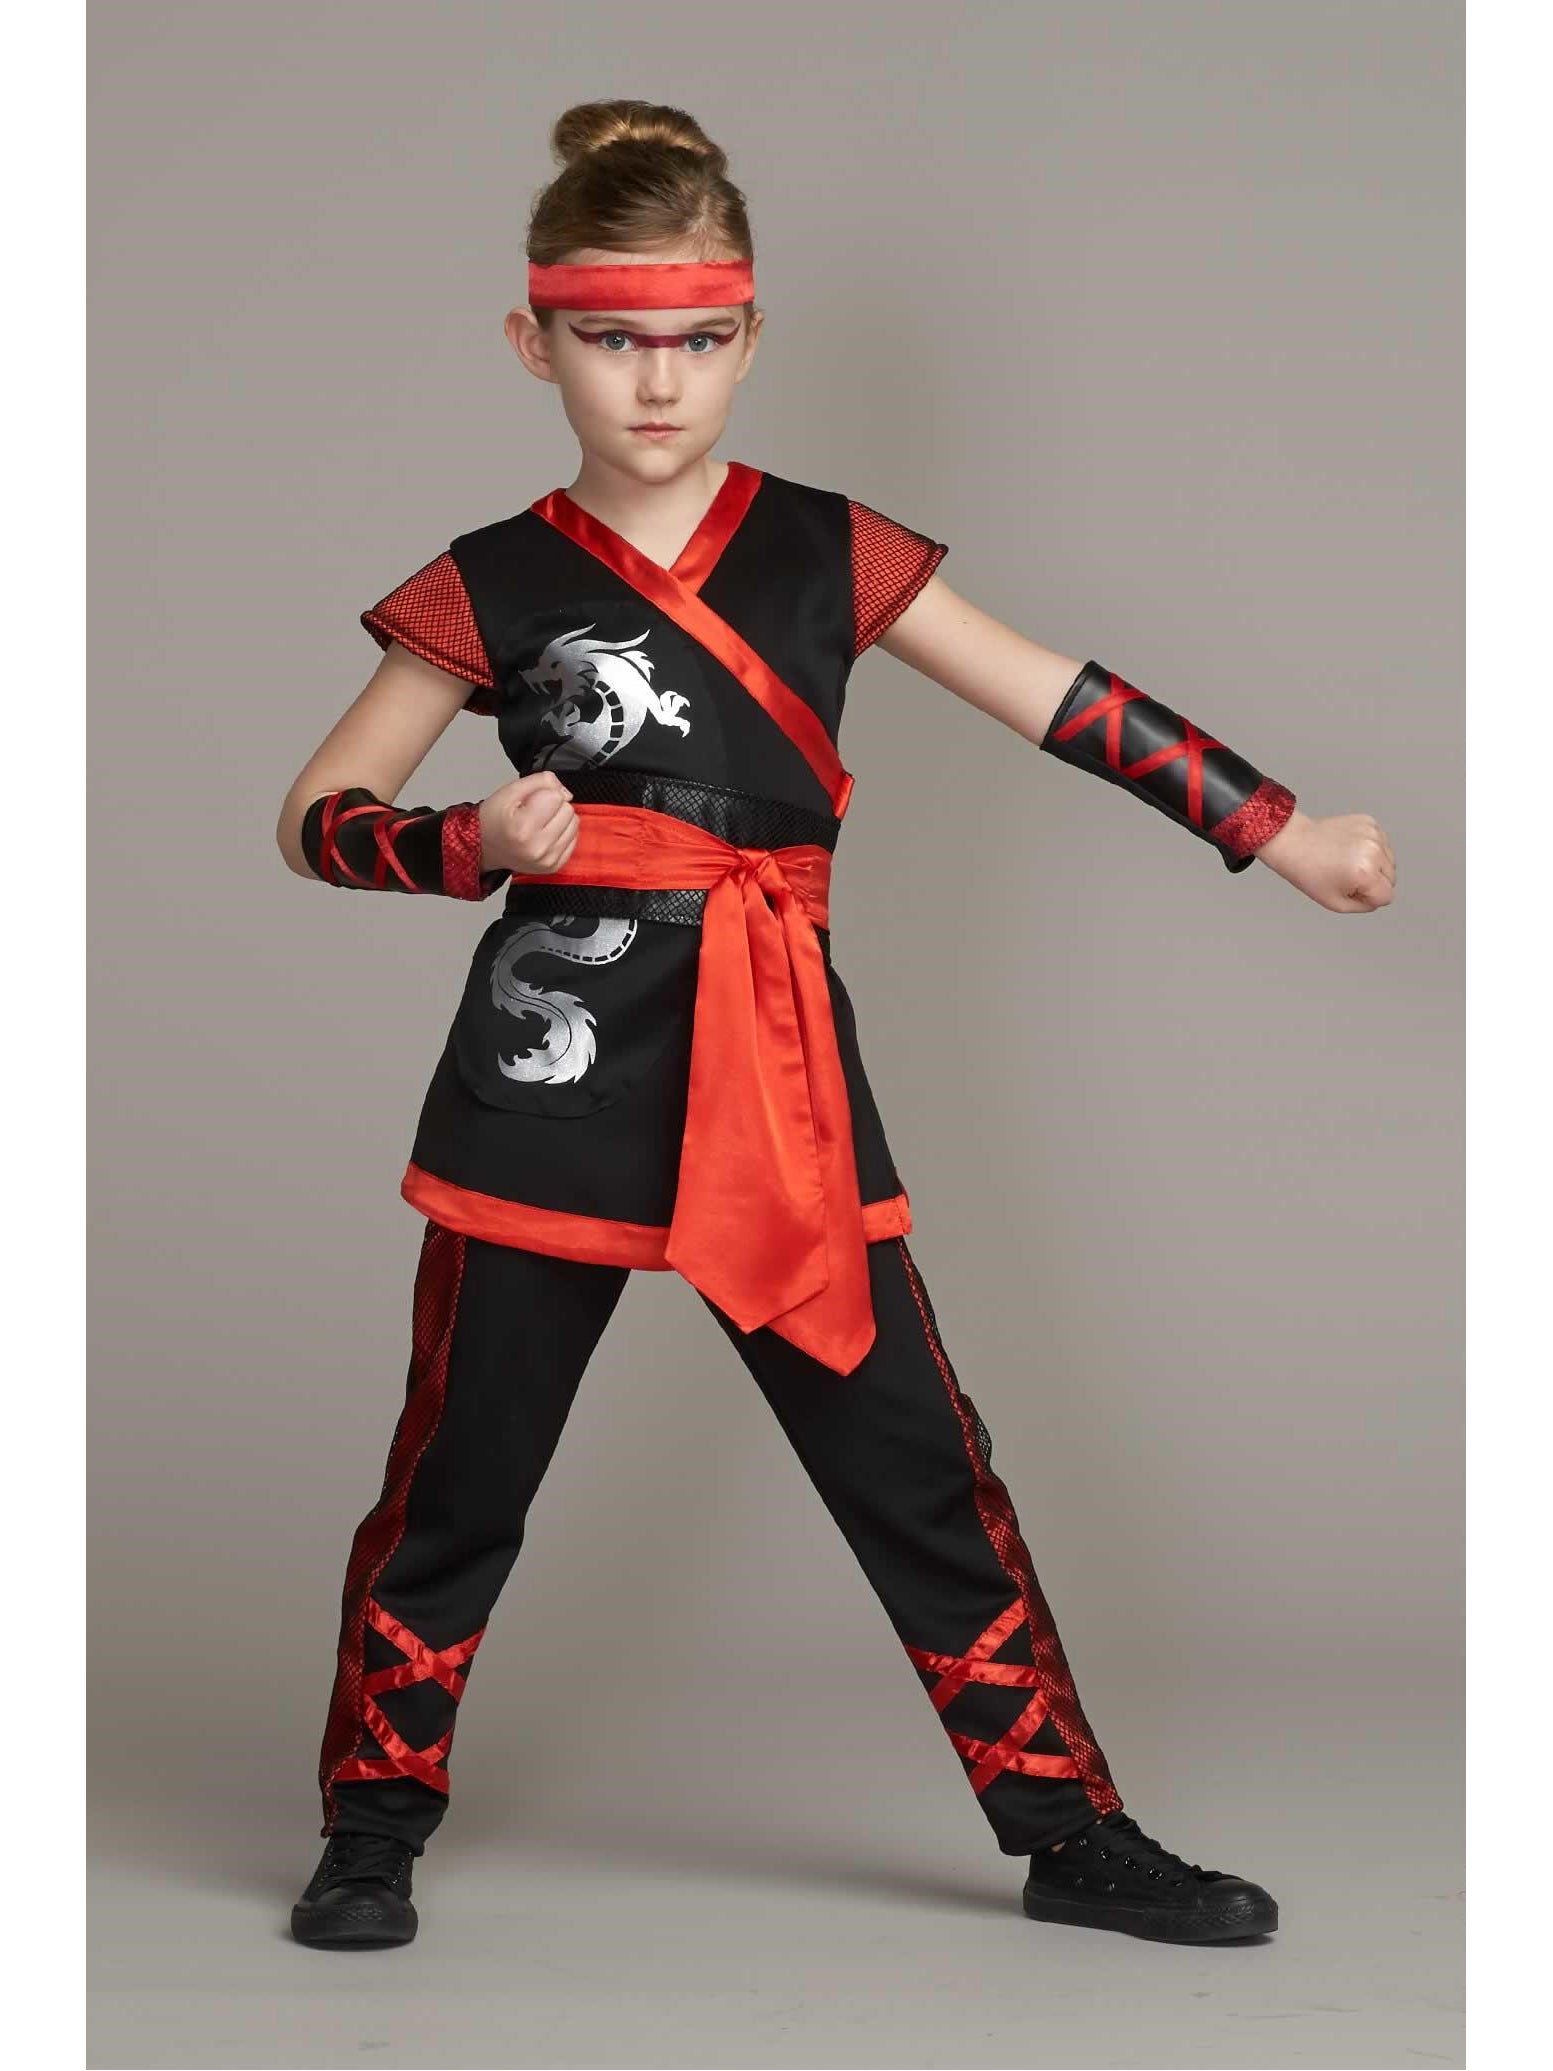 Ninja Costume For Girls – Chasing Fireflies